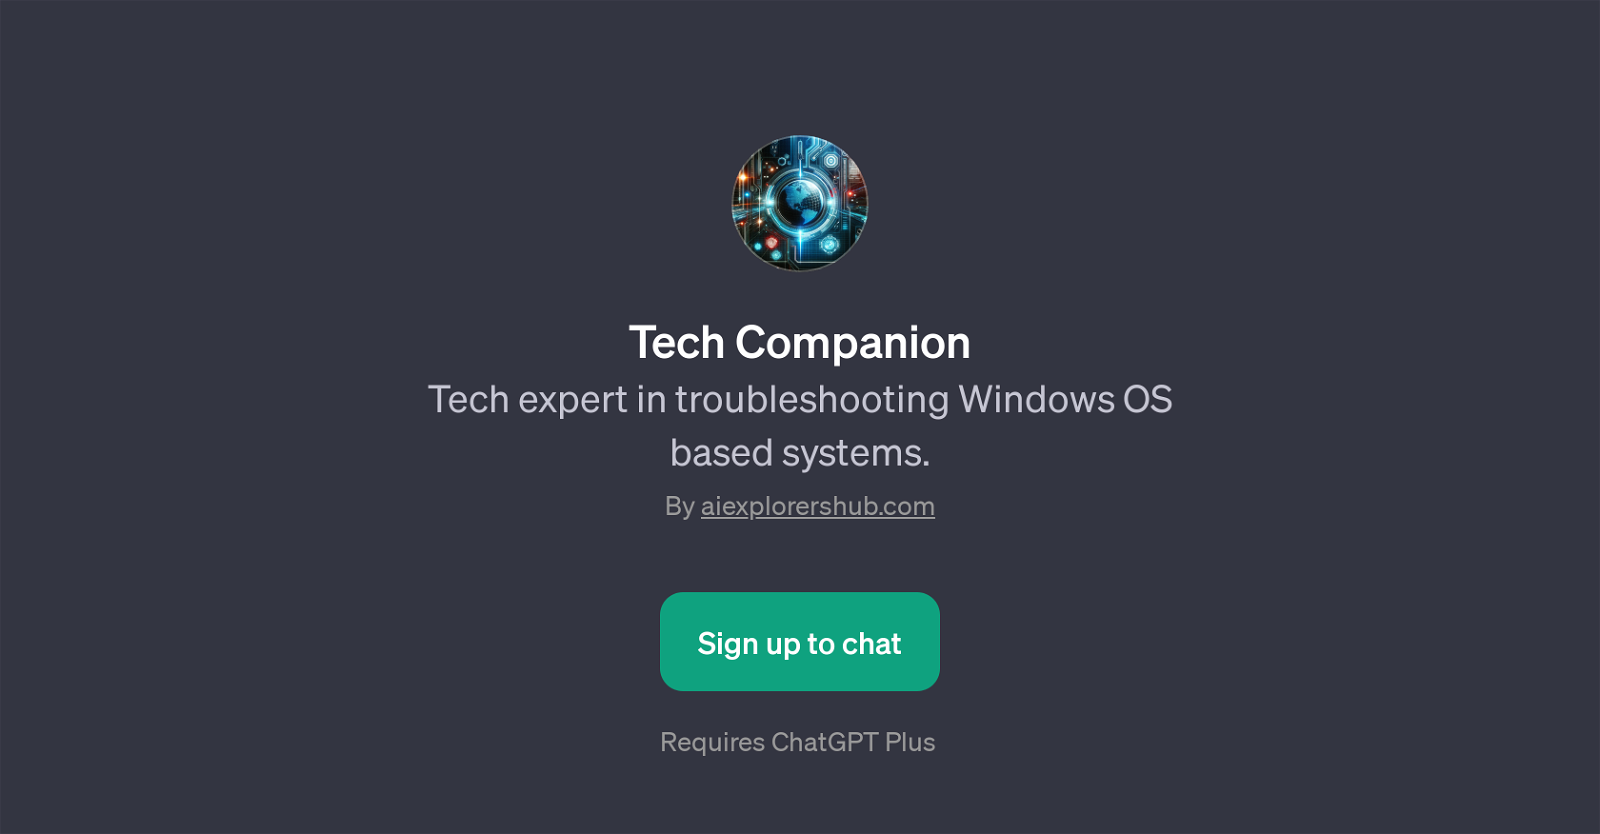 Tech Companion website